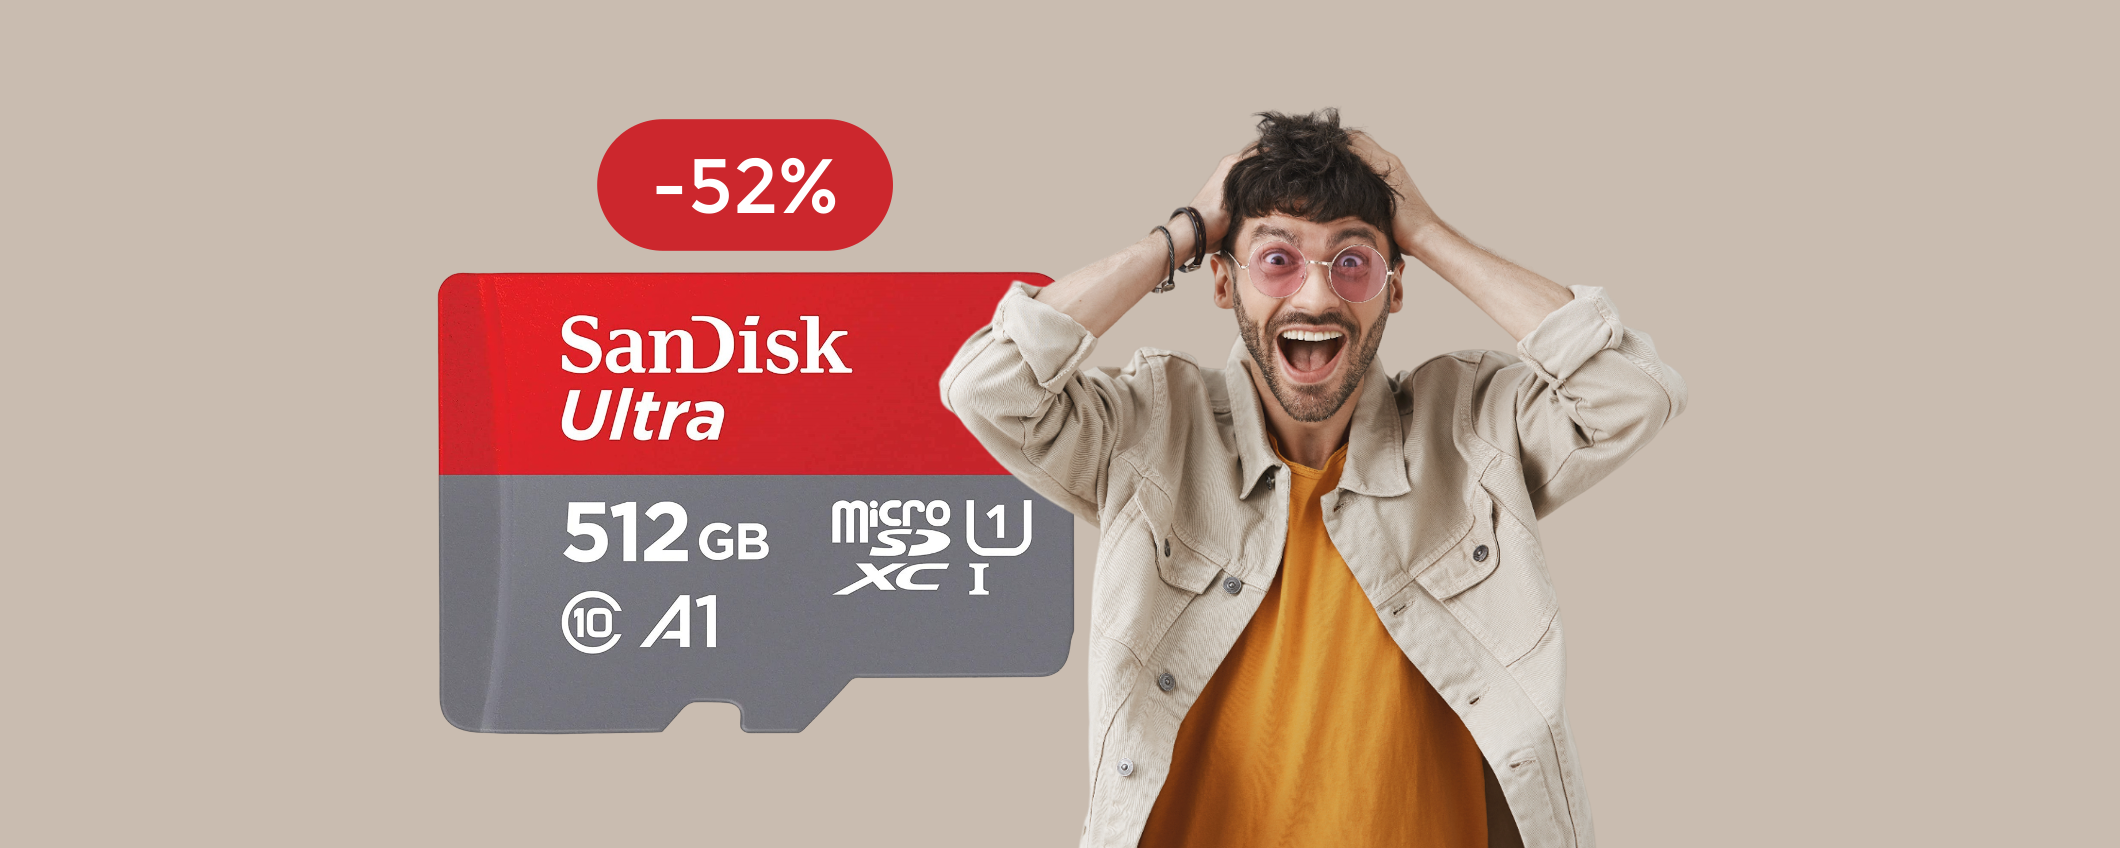 MicroSD SanDisk 512GB: oggi è tua a meno di METÀ PREZZO (-52%)